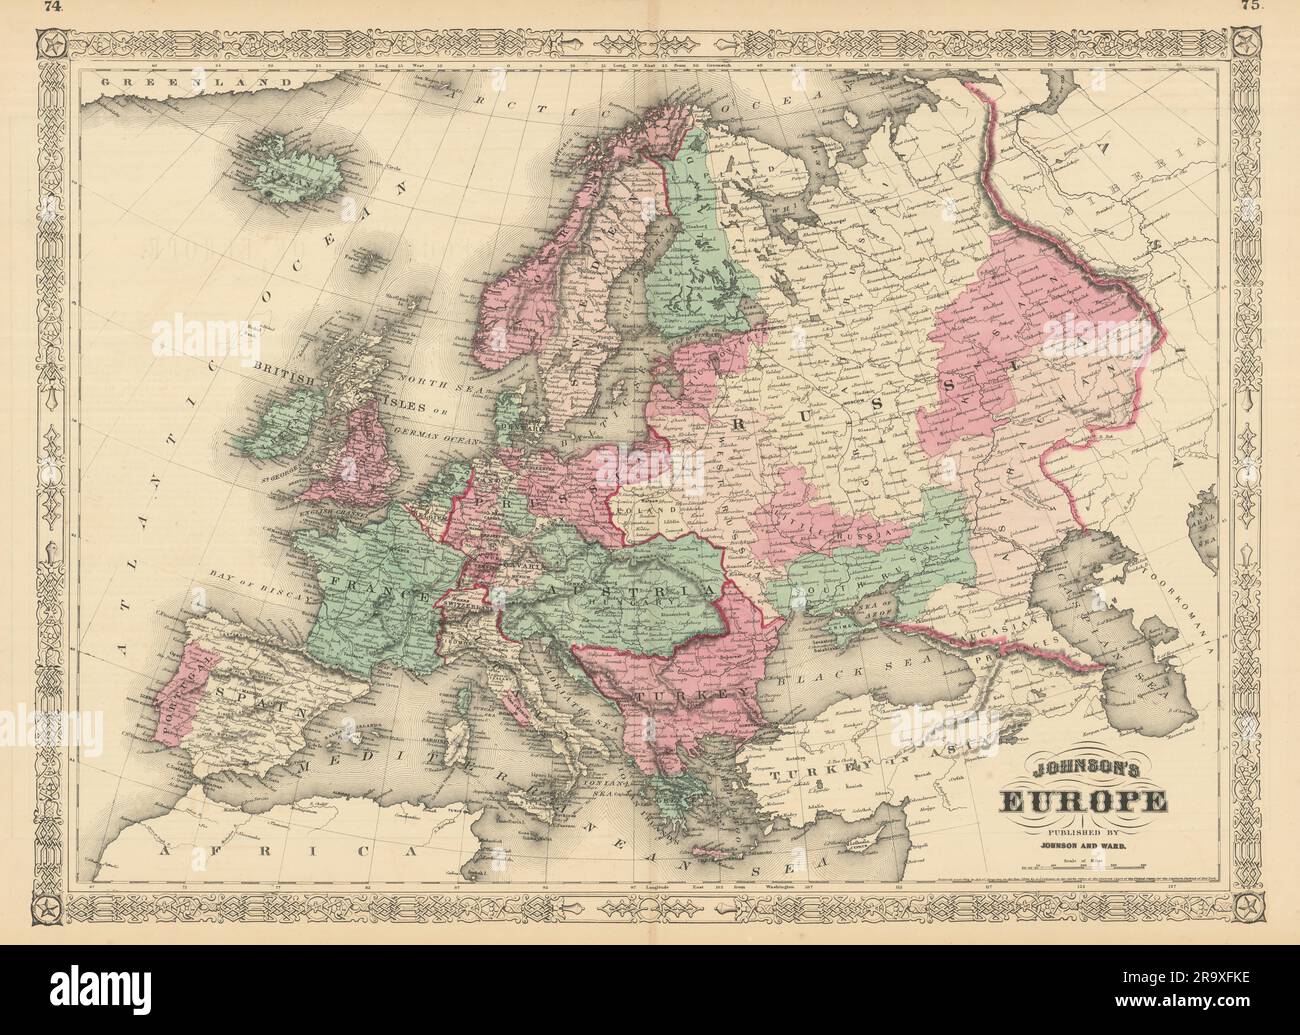 L'Europe de Johnson. Autriche Hongrie Prusse Turquie Etats papal 1866 ancienne carte Banque D'Images